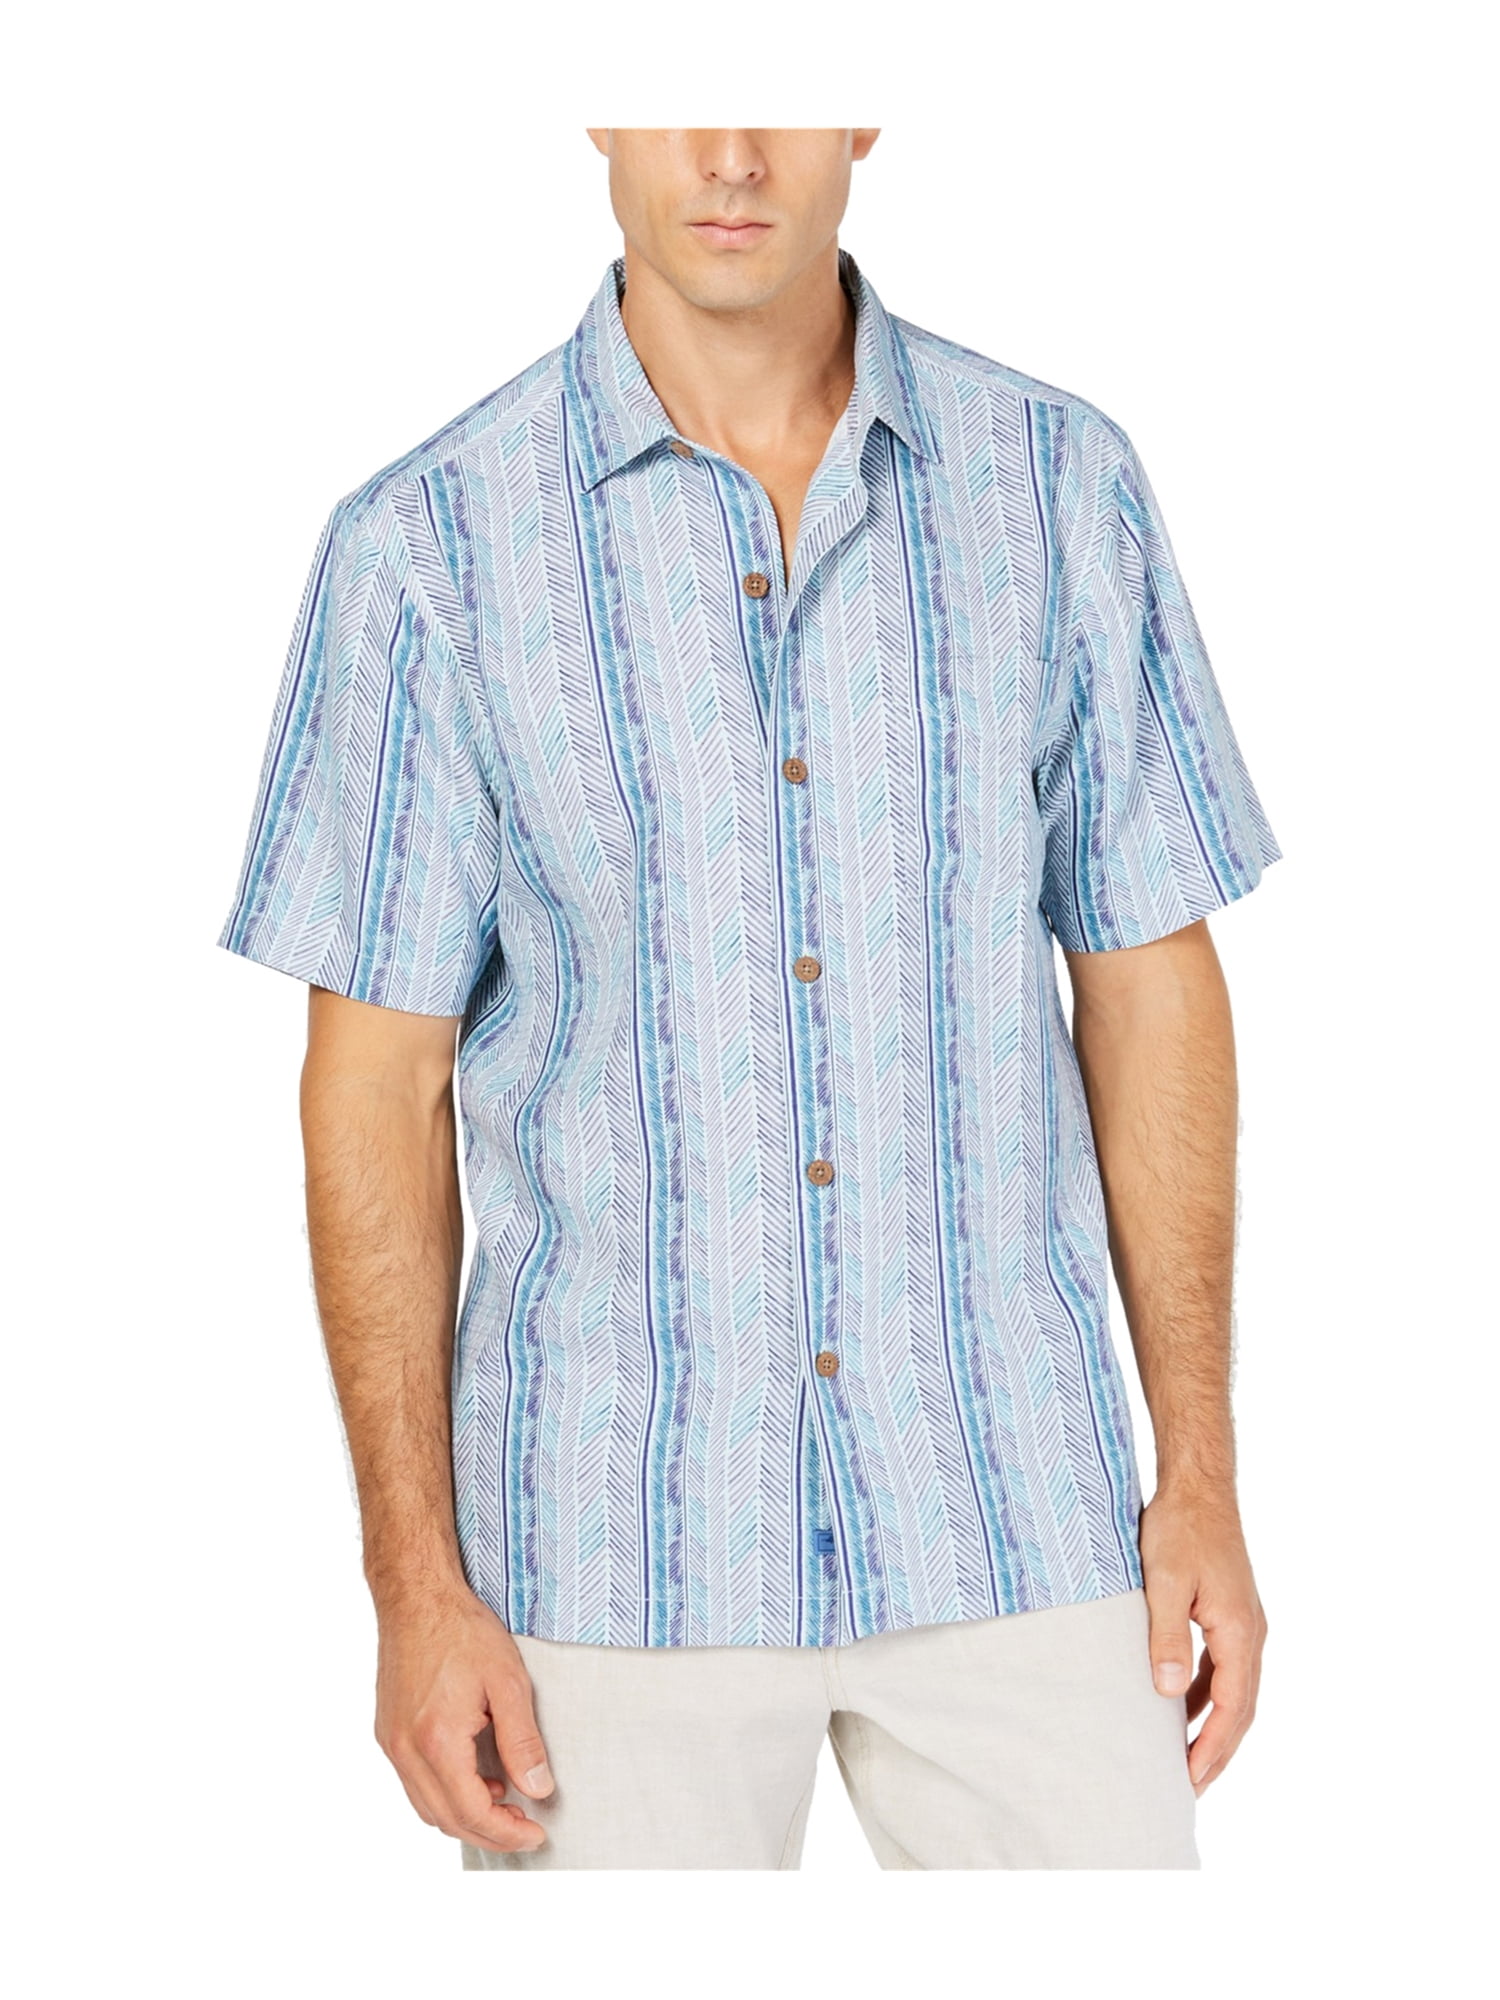 tommy bahama style shirts